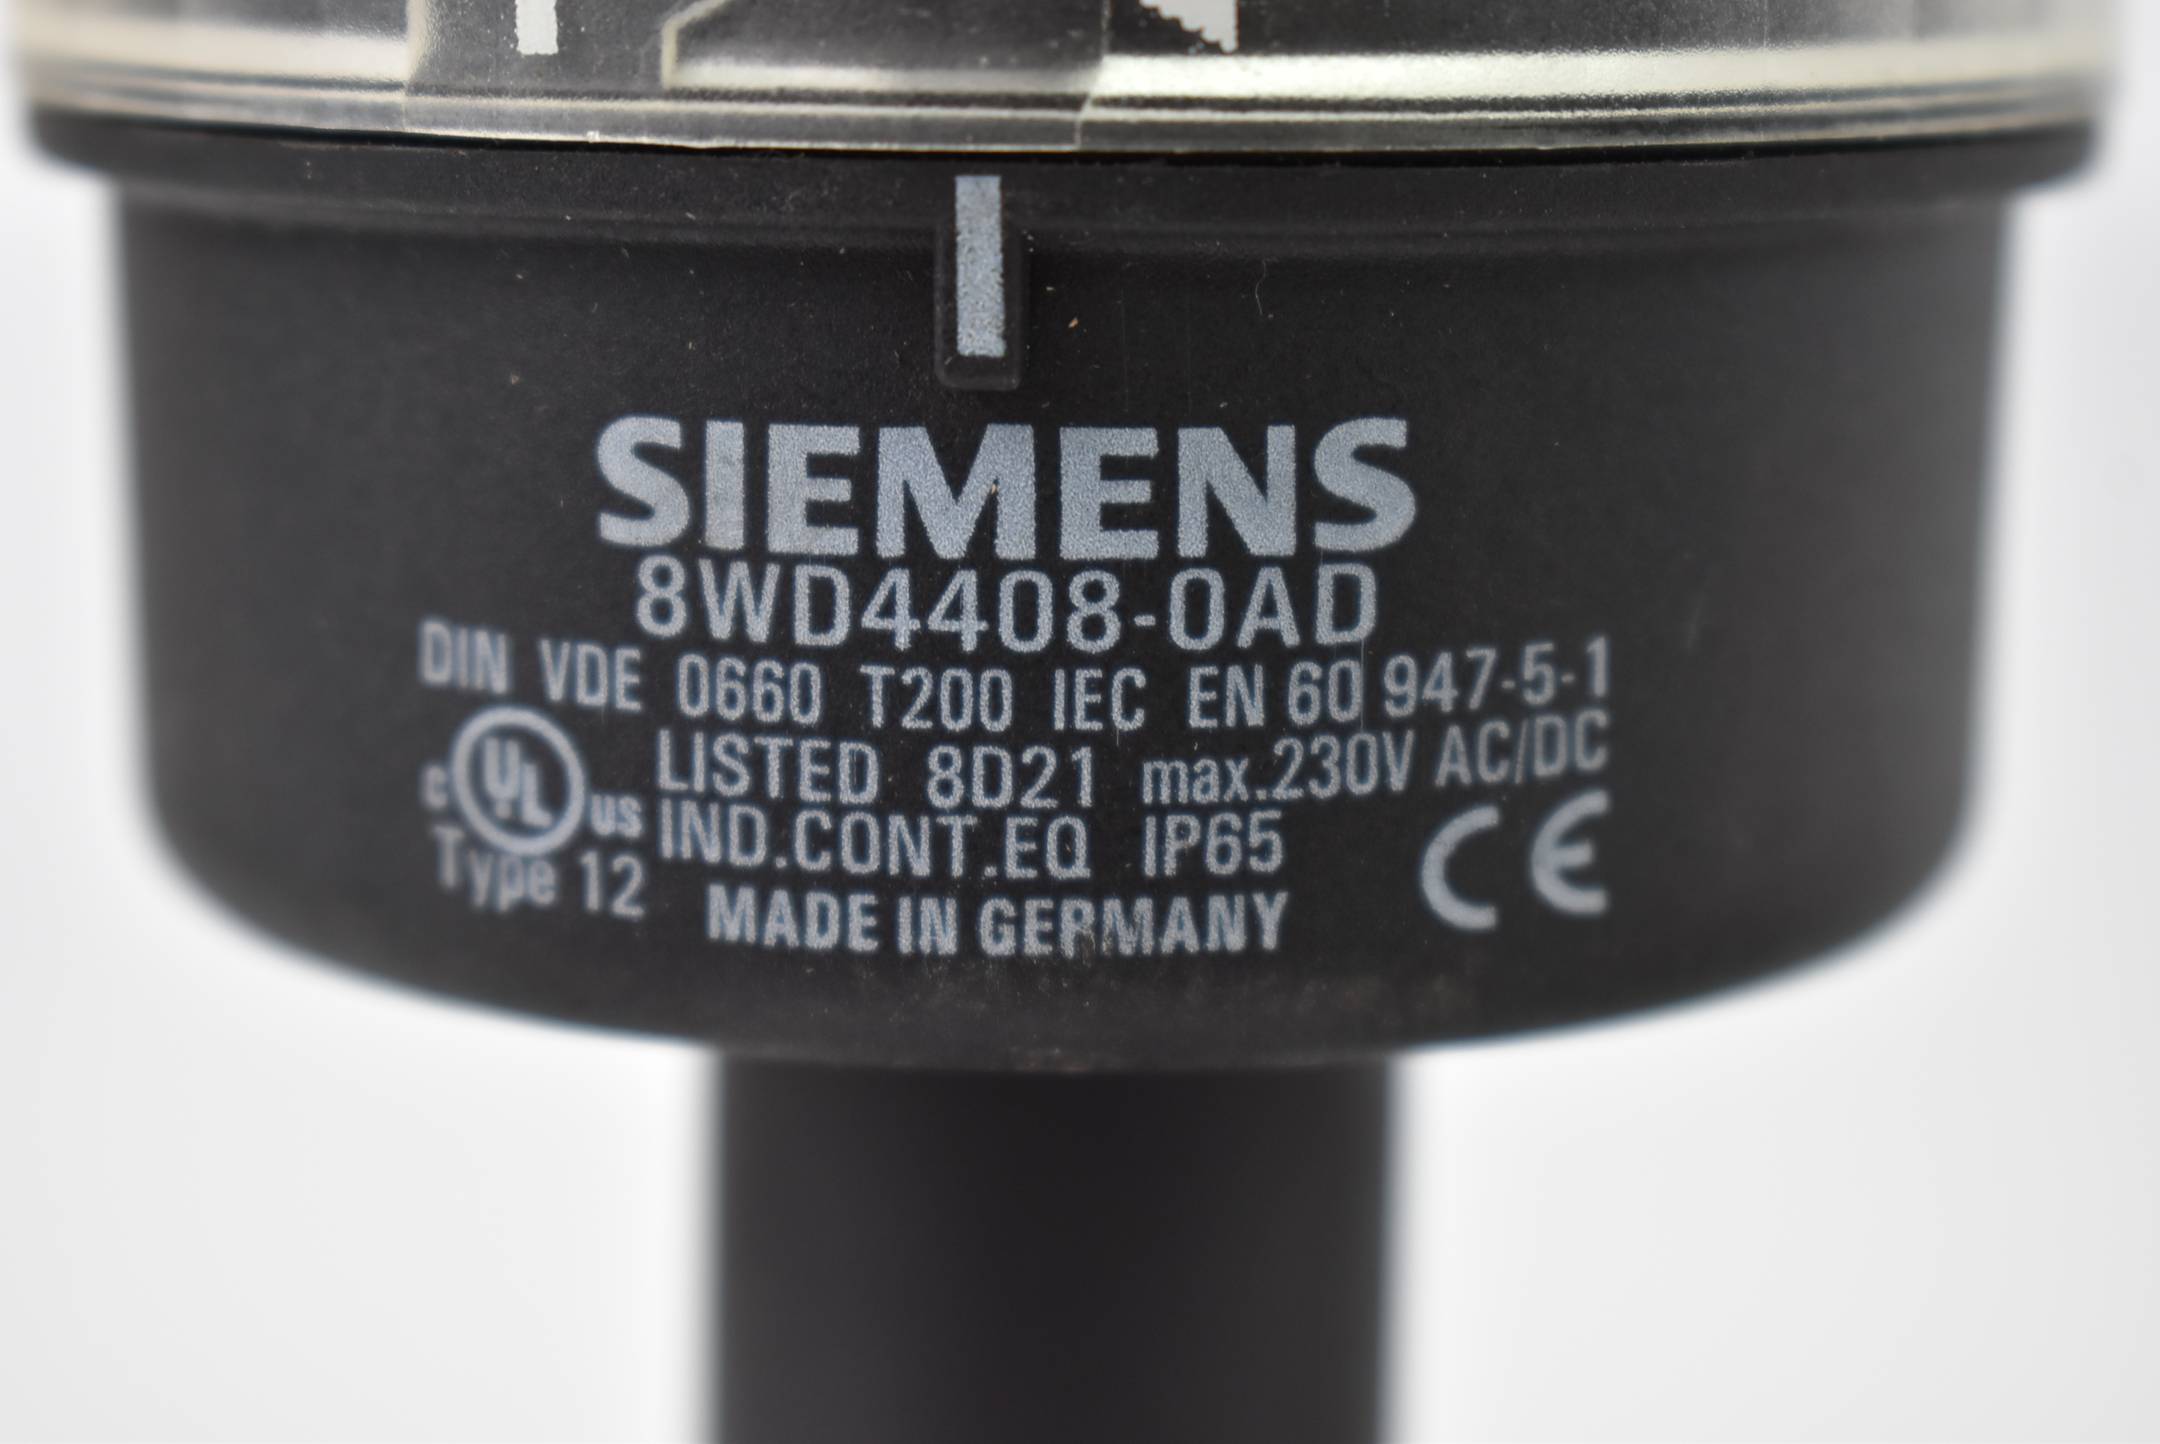 Siemens Signalleuchte 8WD4408-0AD + 8WD4420-5AE + 8WD4420-5AC + 8WD4420-5AB